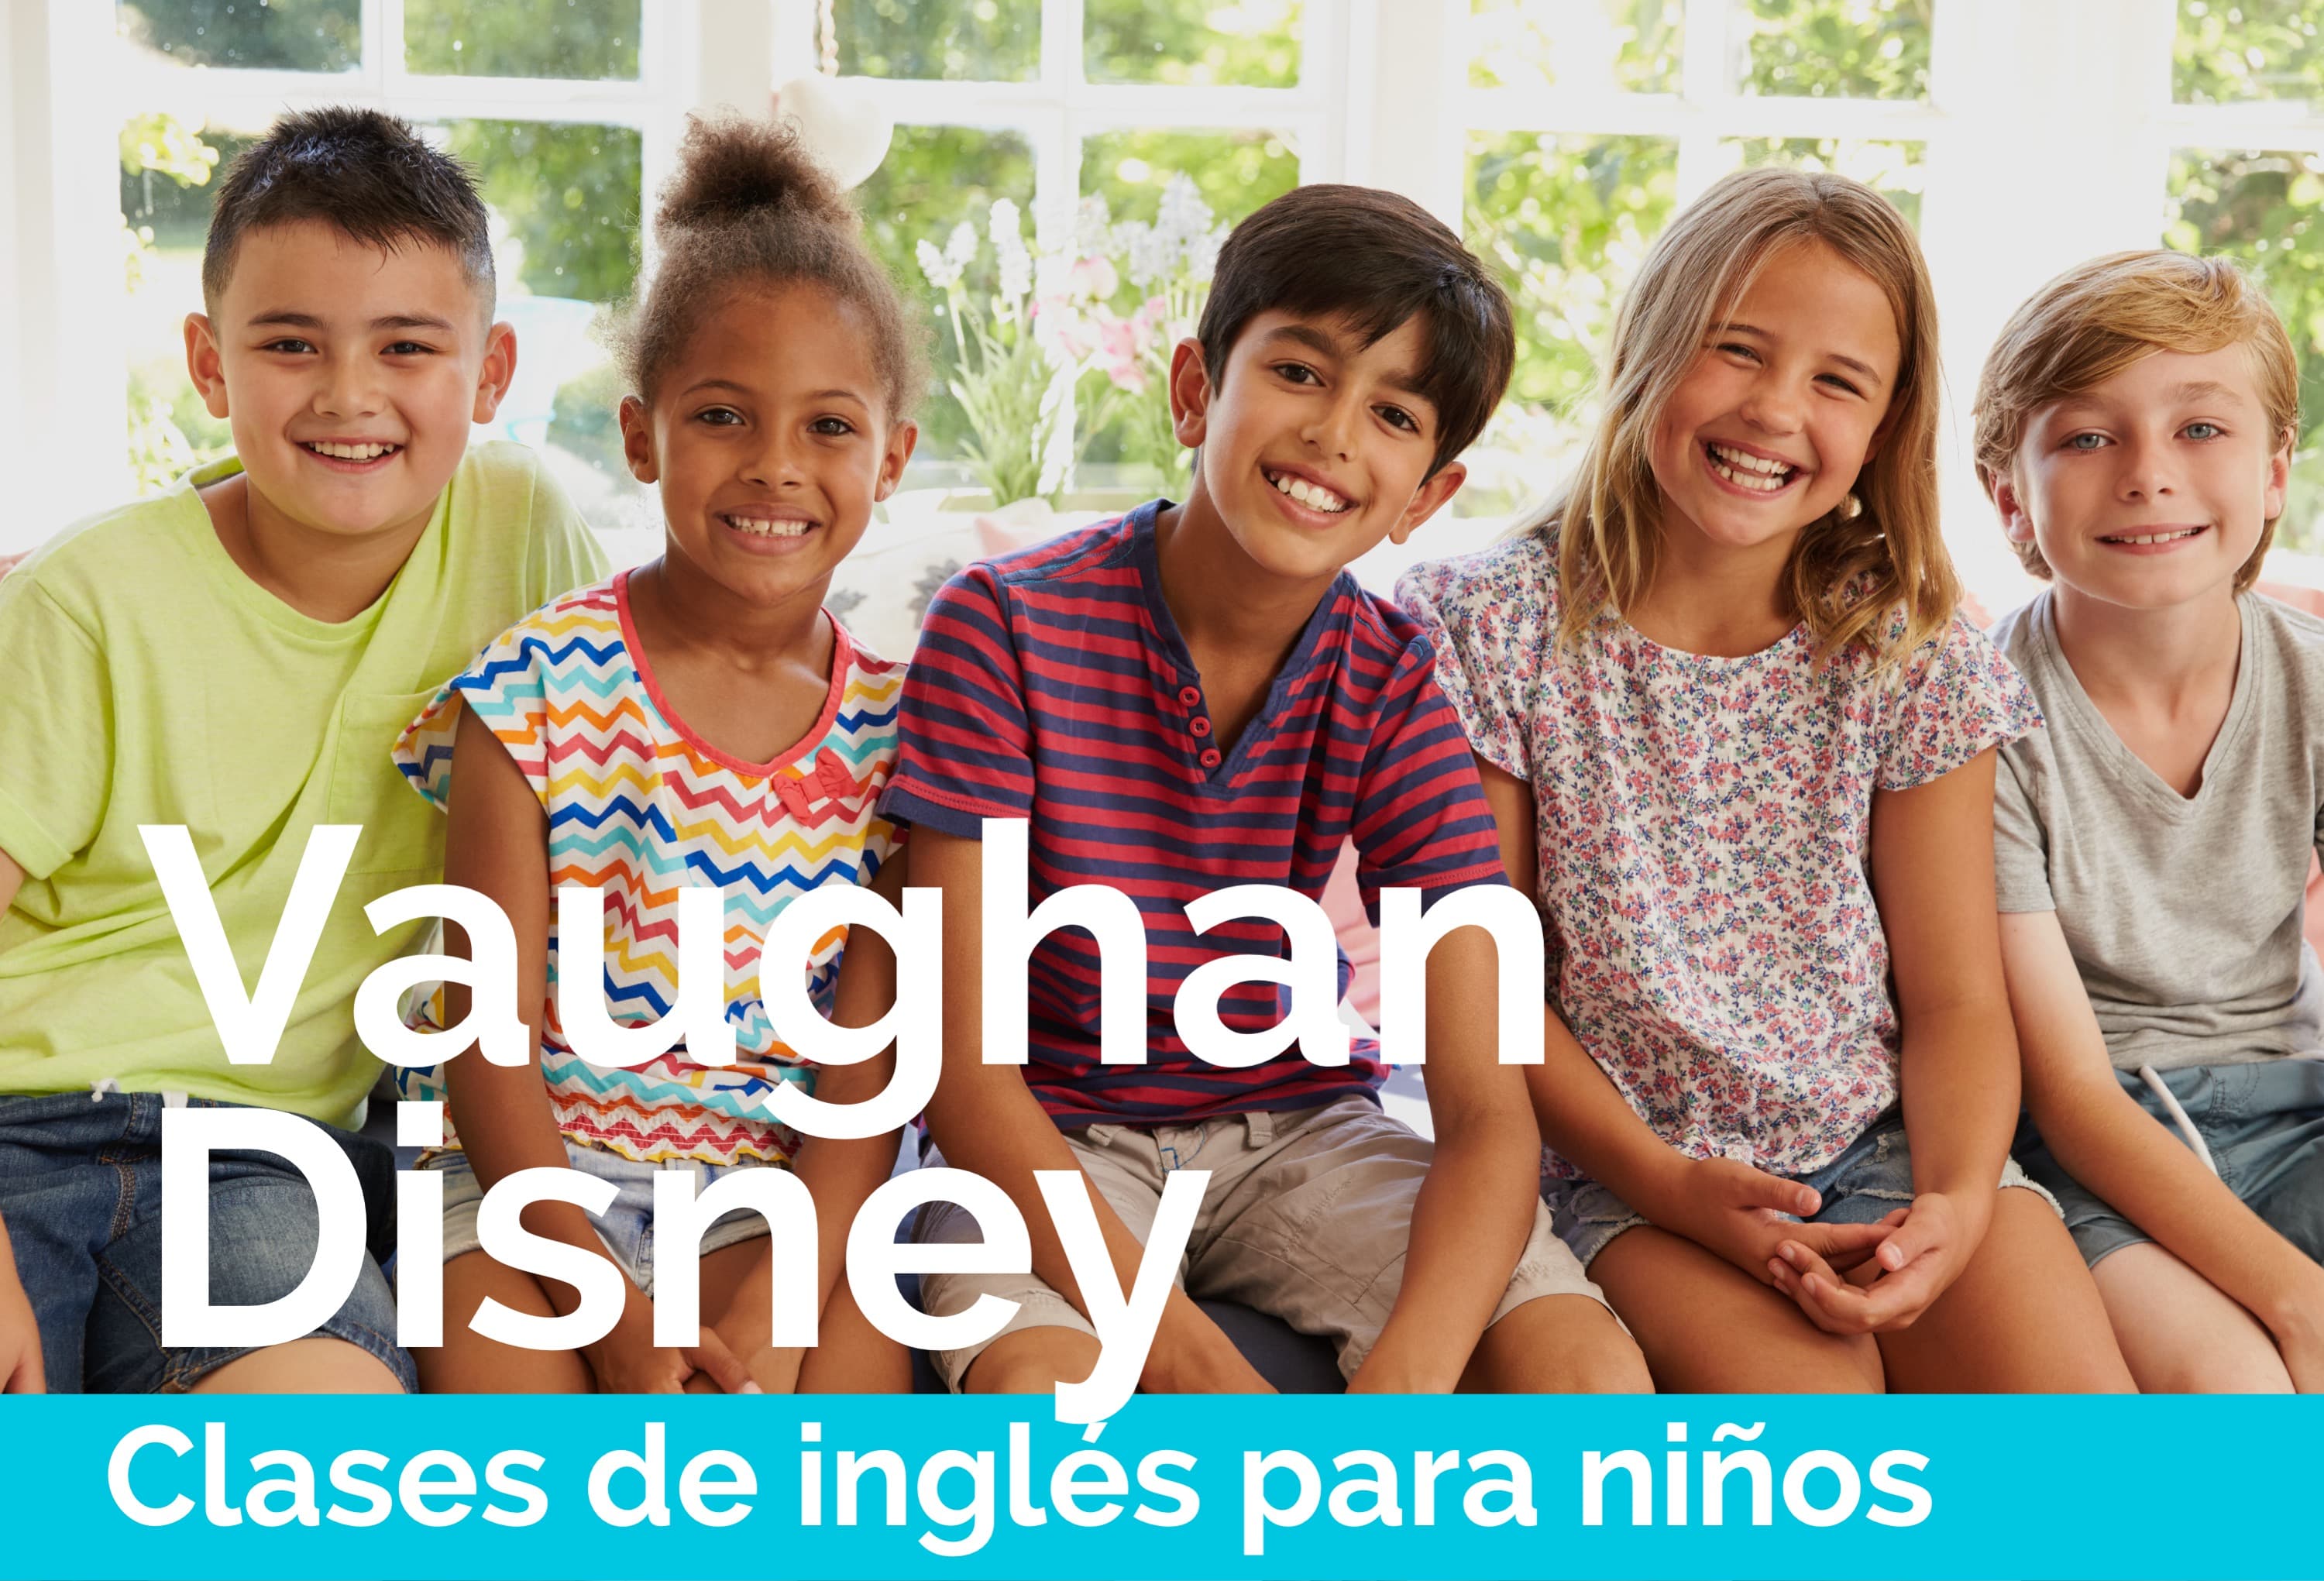 Clases de inglés en grupo para niños pequeños Vaughan Disney